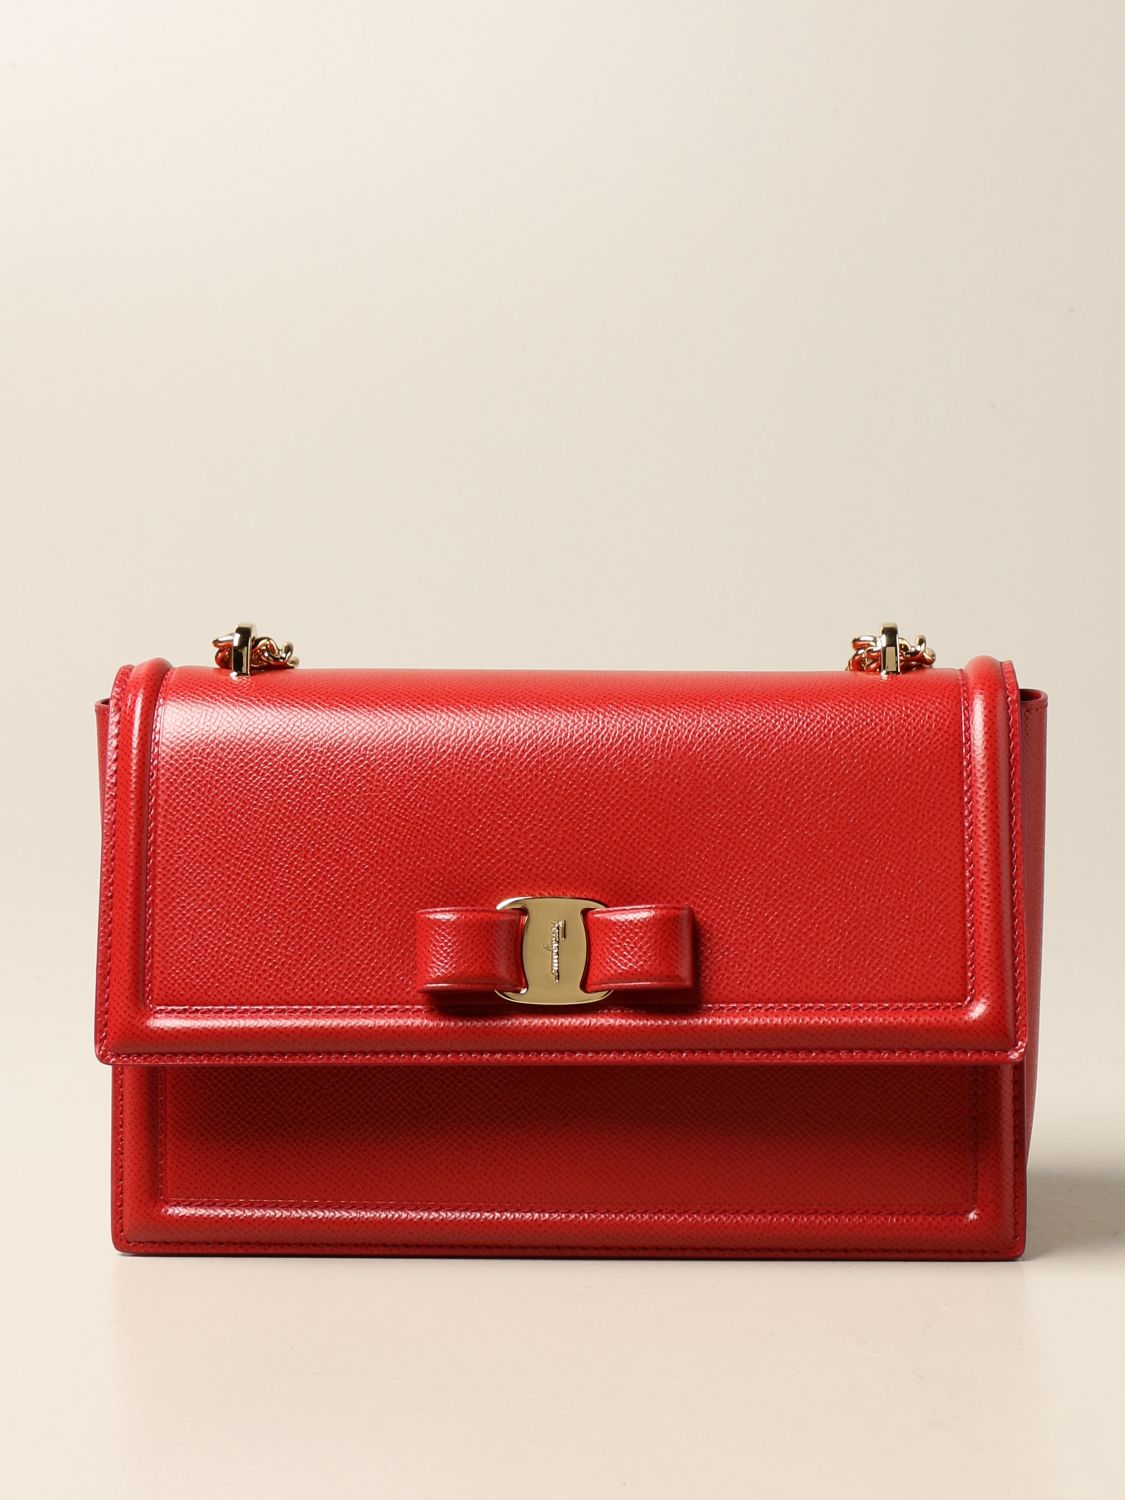 FERRAGAMO: Ginny leather bag with Vara bow - Red | Ferragamo crossbody ...